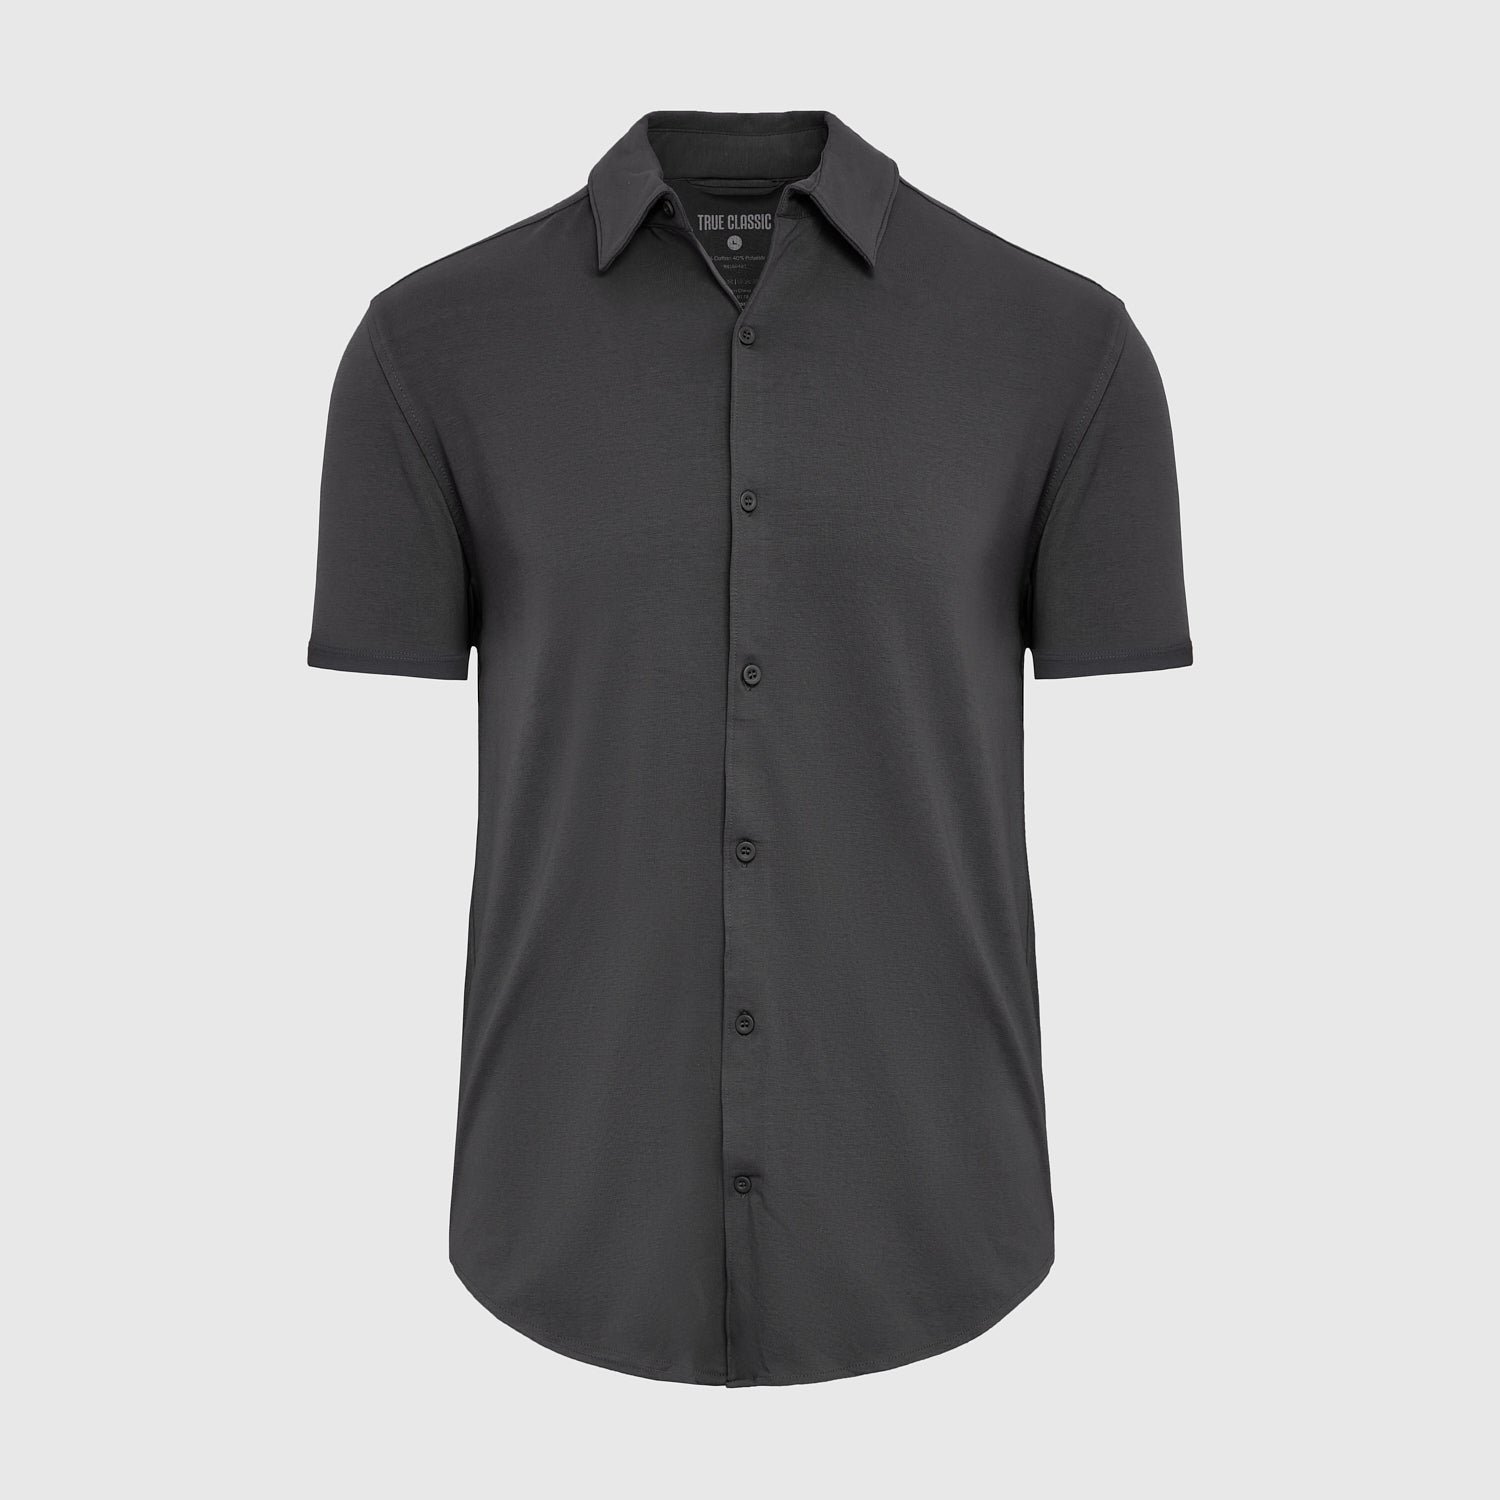 Carbon Short Sleeve Button Up Shirt